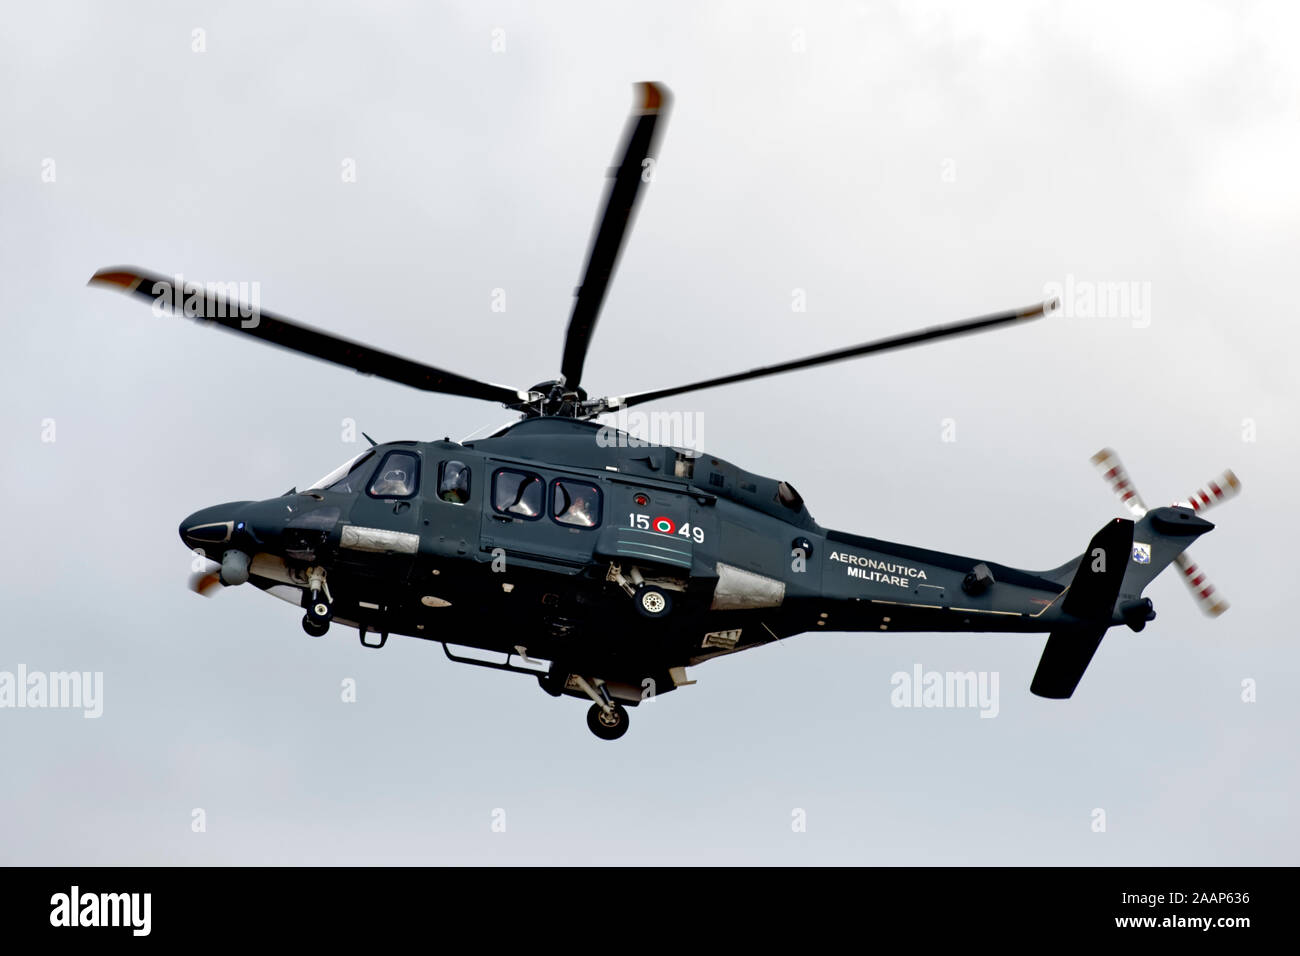 Fairford, Gloucestershire, Regno Unito - 16 Luglio 2018: una forza aerea italiana Leonardo HH-139un elicottero n. di serie MM81805/ 15-49 anni dal 15° Stormo al RIAT 2018 Foto Stock